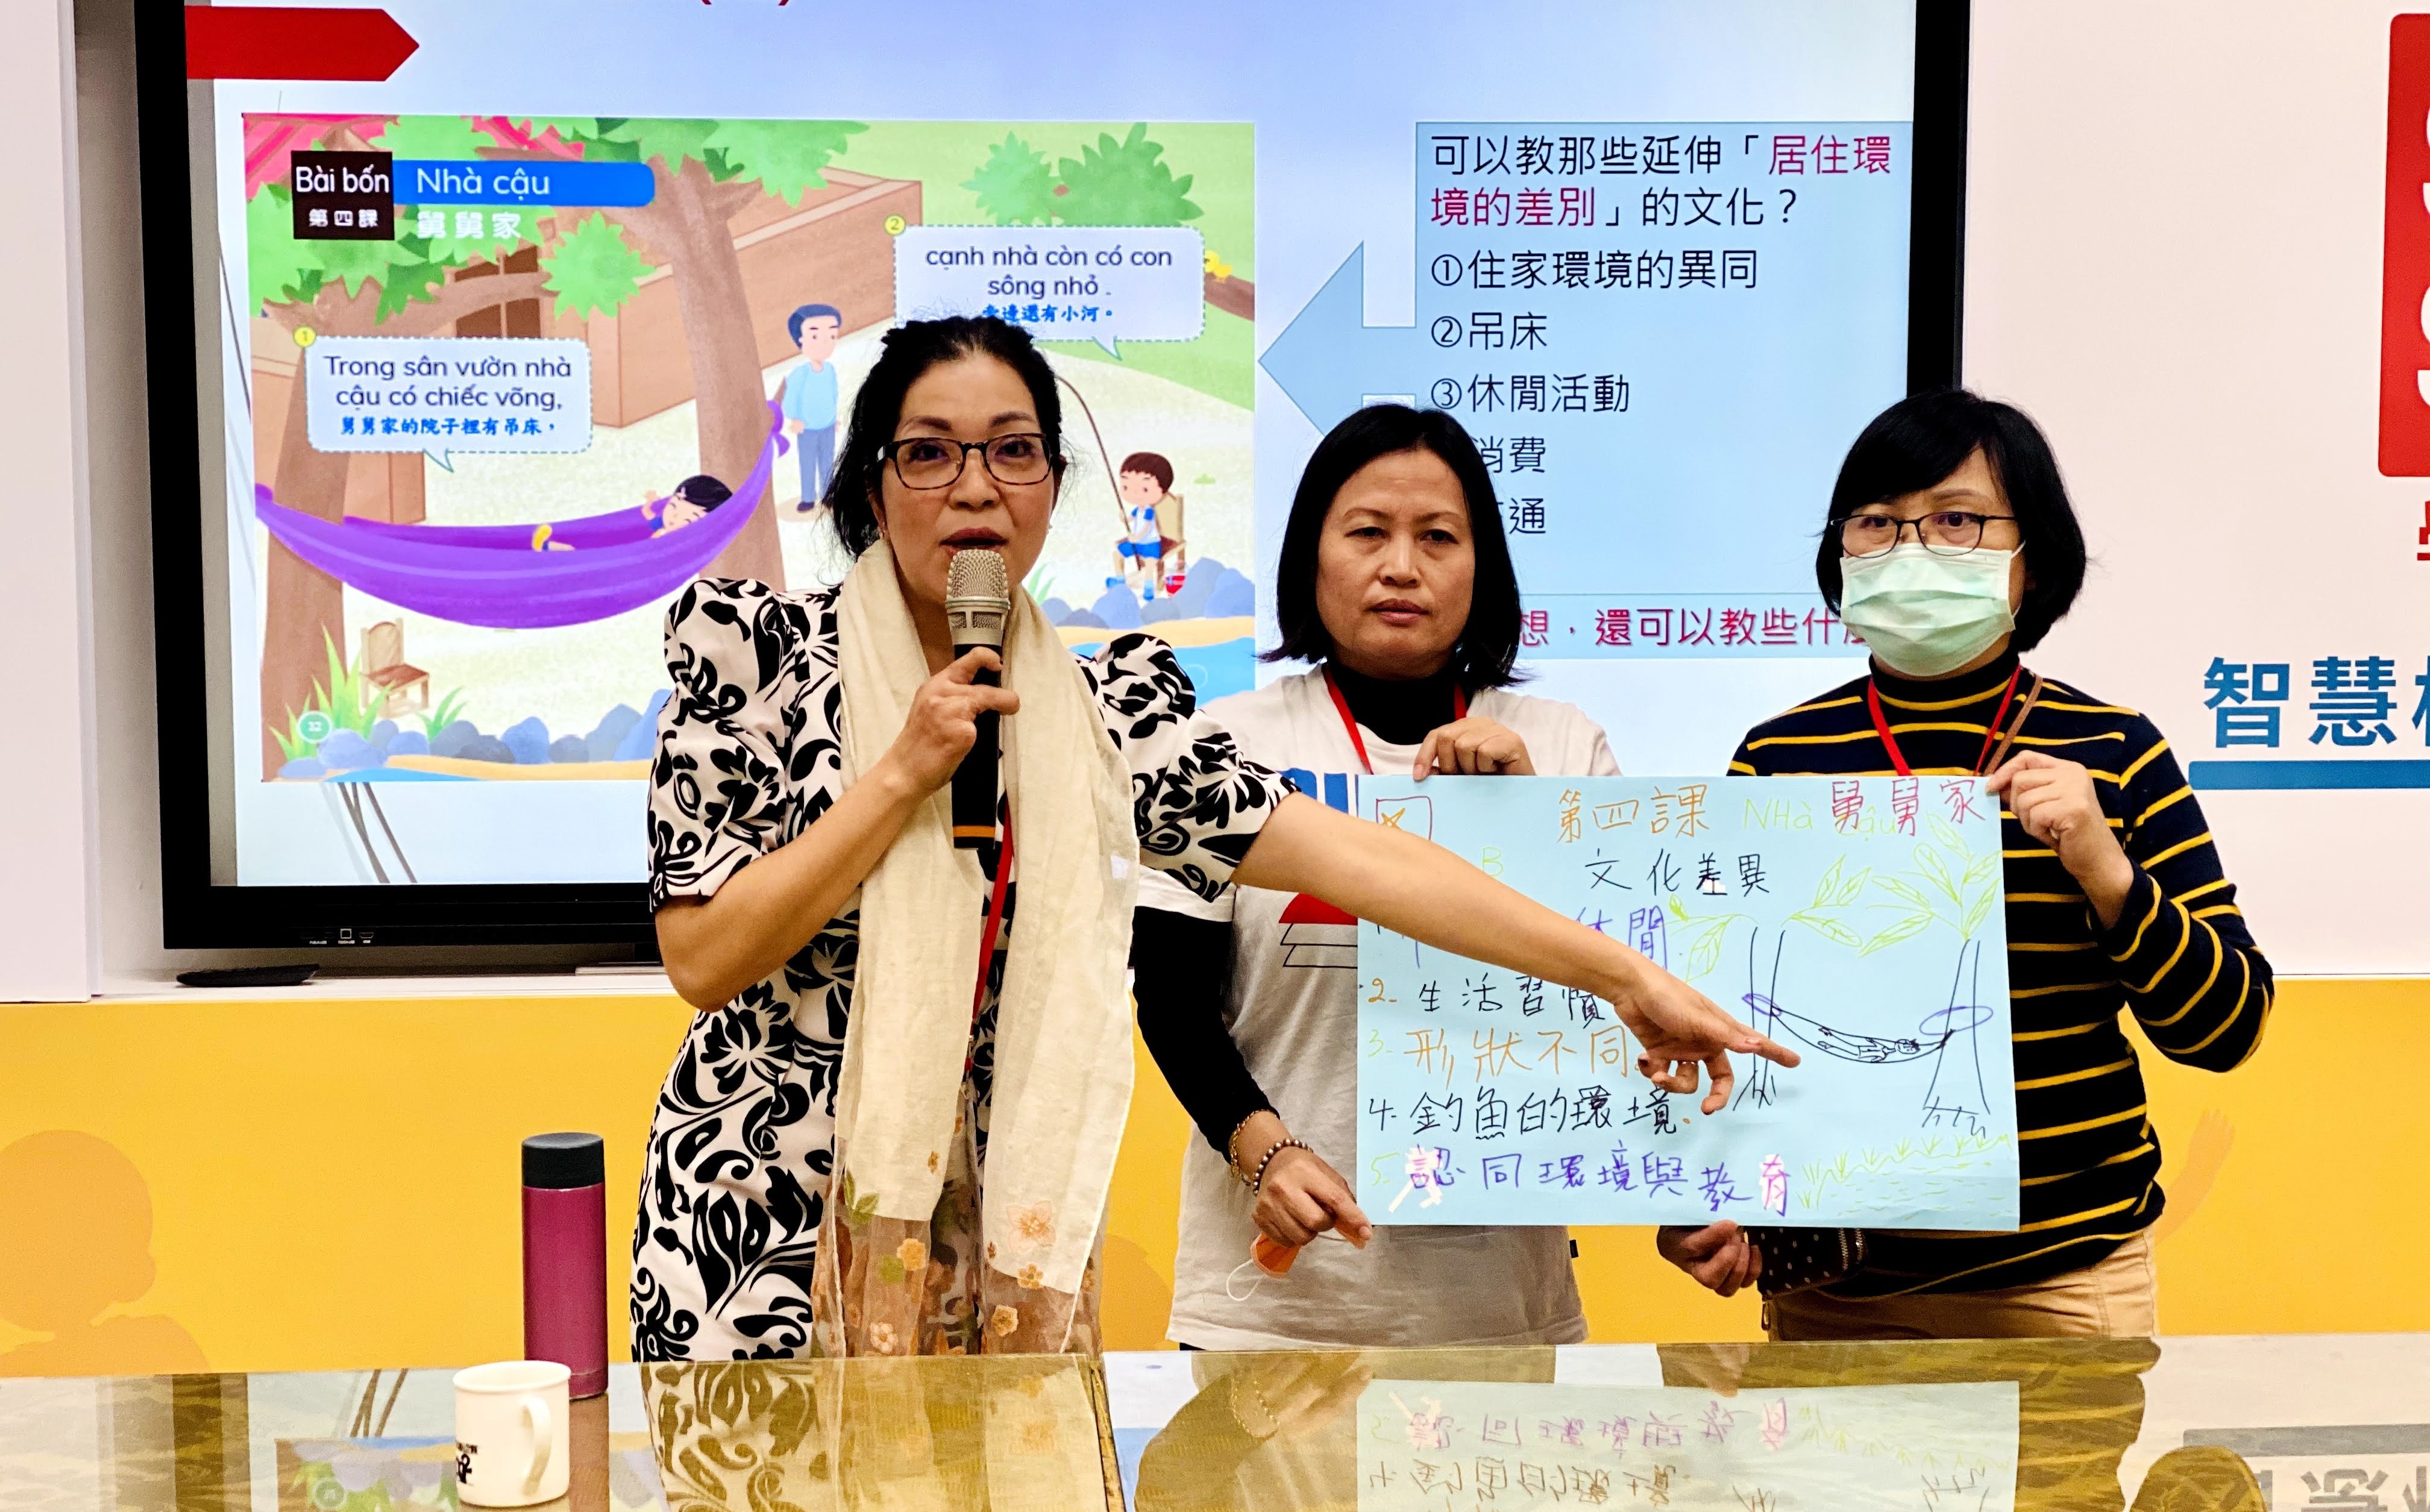 Thành phố Tân Bắc tổ chức khóa đào tạo nâng cao cho giáo viên giảng dạy ngôn ngữ mẹ đẻ của di dân mới. (Nguồn ảnh: Chính quyền thành phố Tân Bắc) 